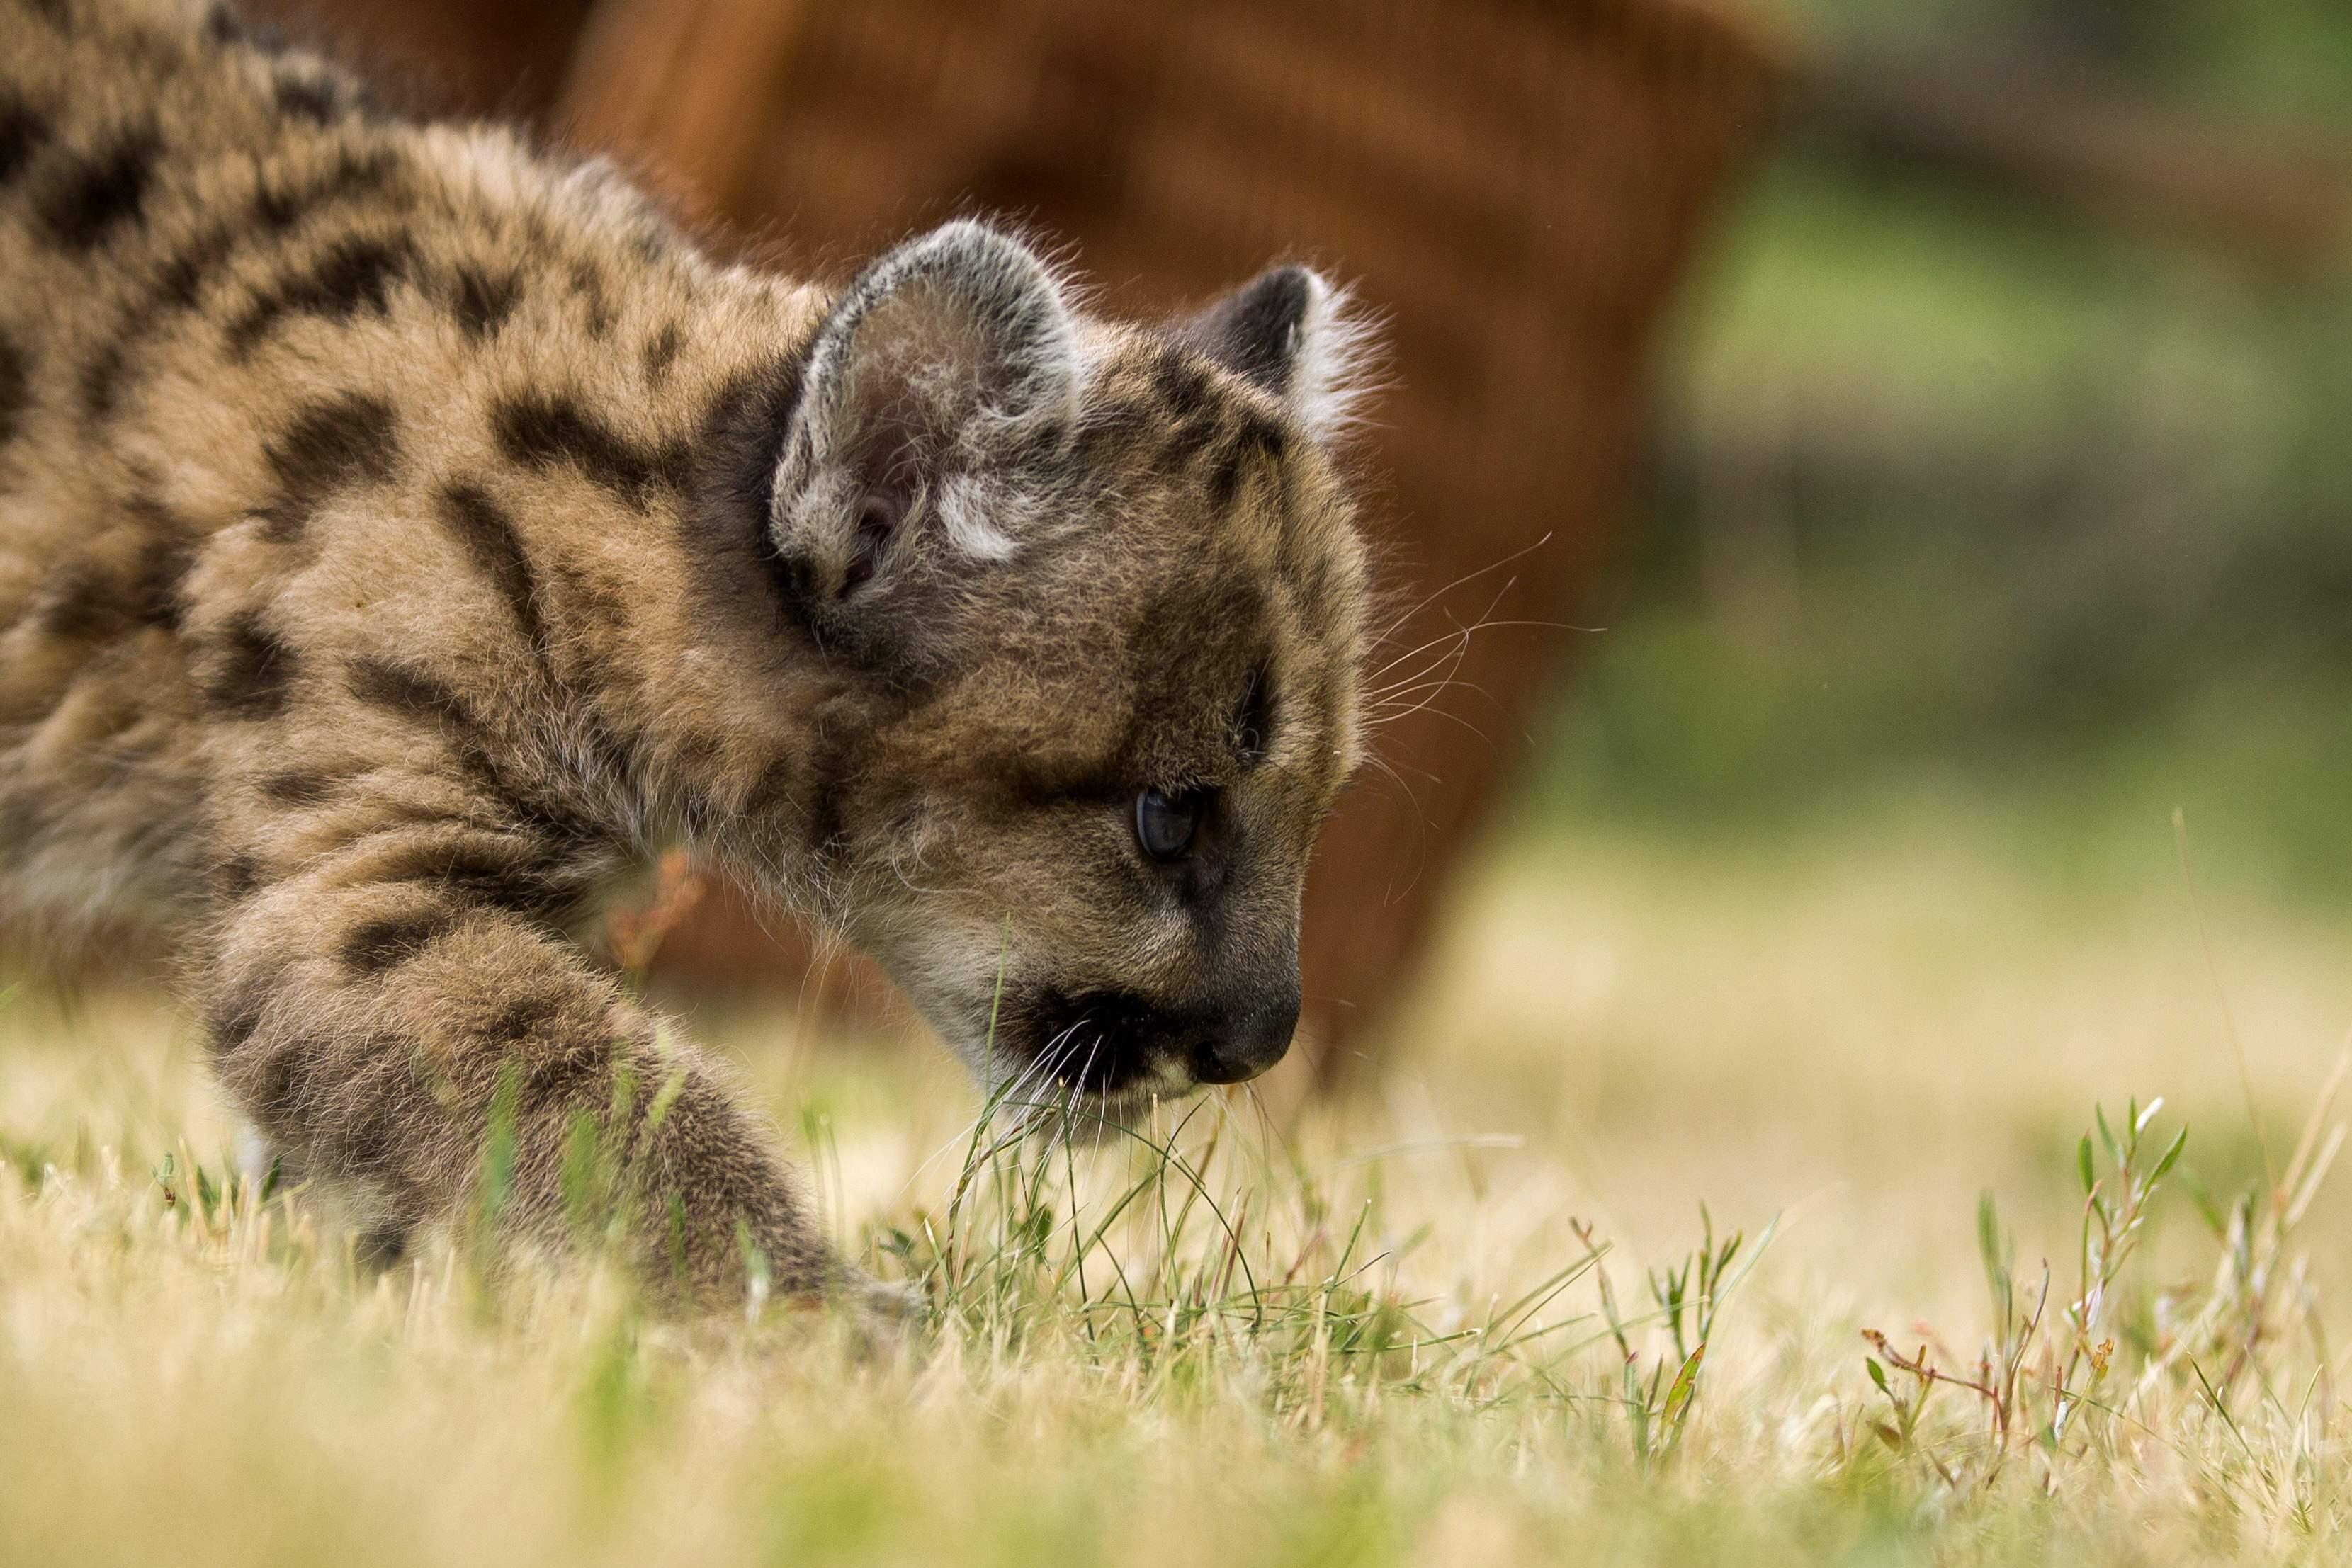 Cub Puma walking